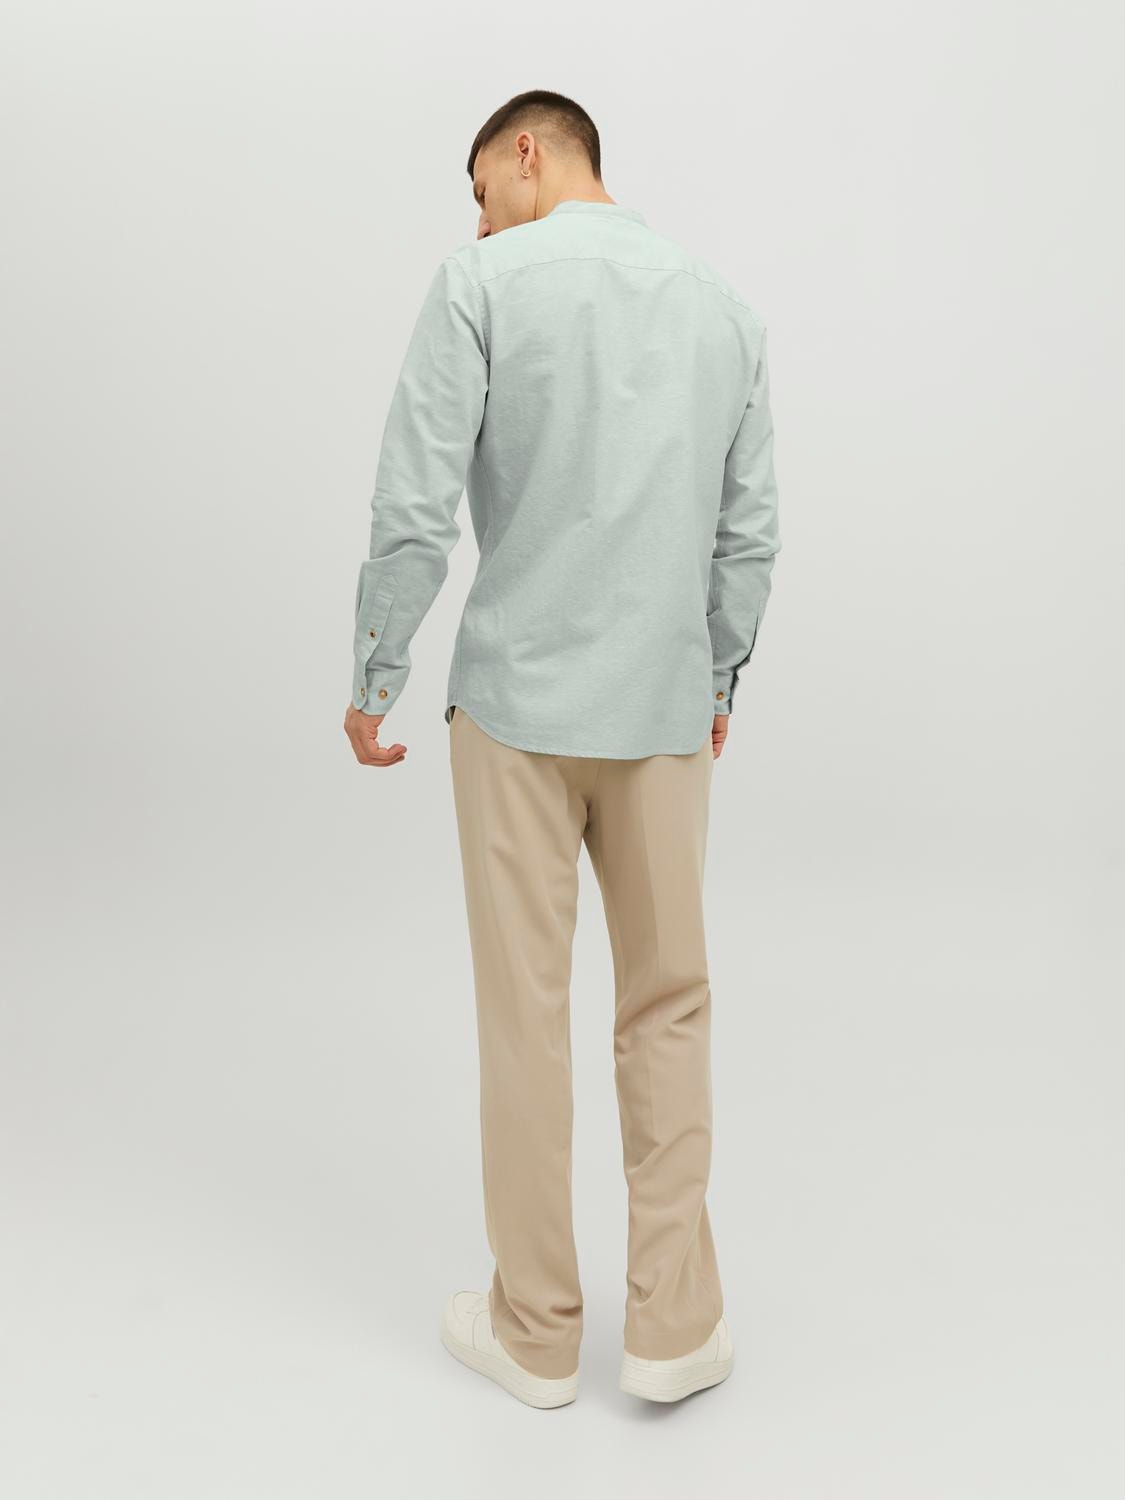 Jack & Jones Slim Fit Casual shirt -Granite Green - 12196820